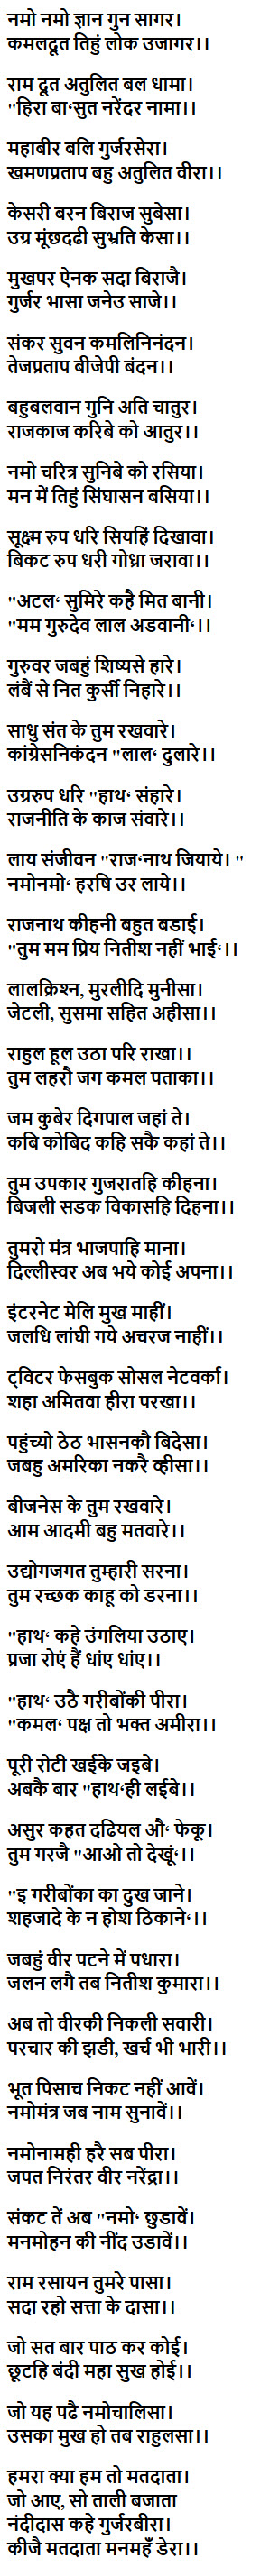 Modi chalisa in hindi